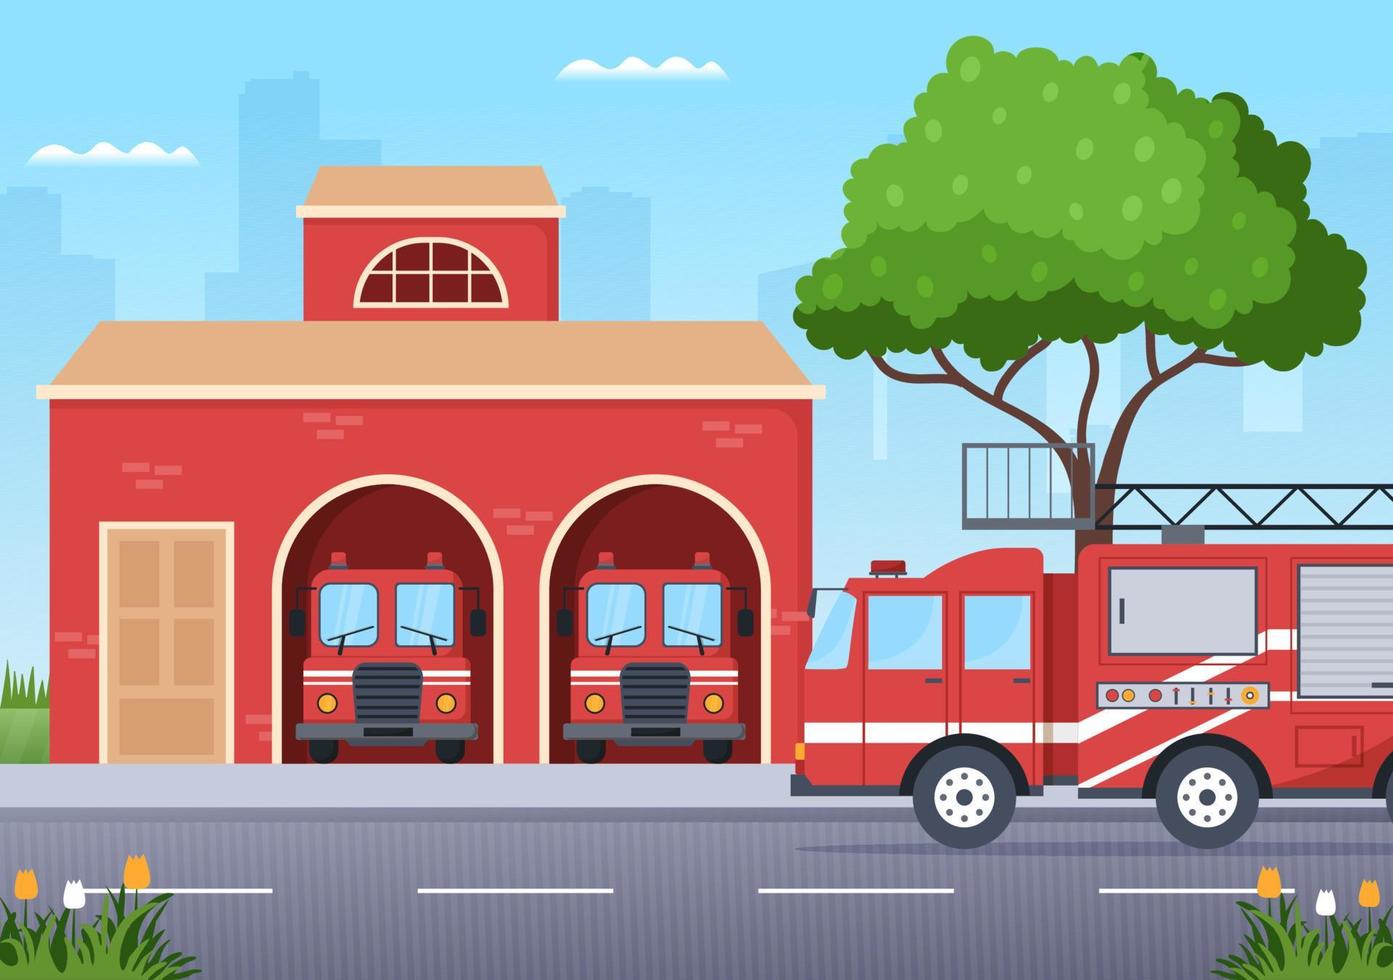 departamento de bomberos con bomberos extinguiendo la casa, el bosque y ayudando a las personas en diversas situaciones en una ilustración de caricatura dibujada a mano plana vector